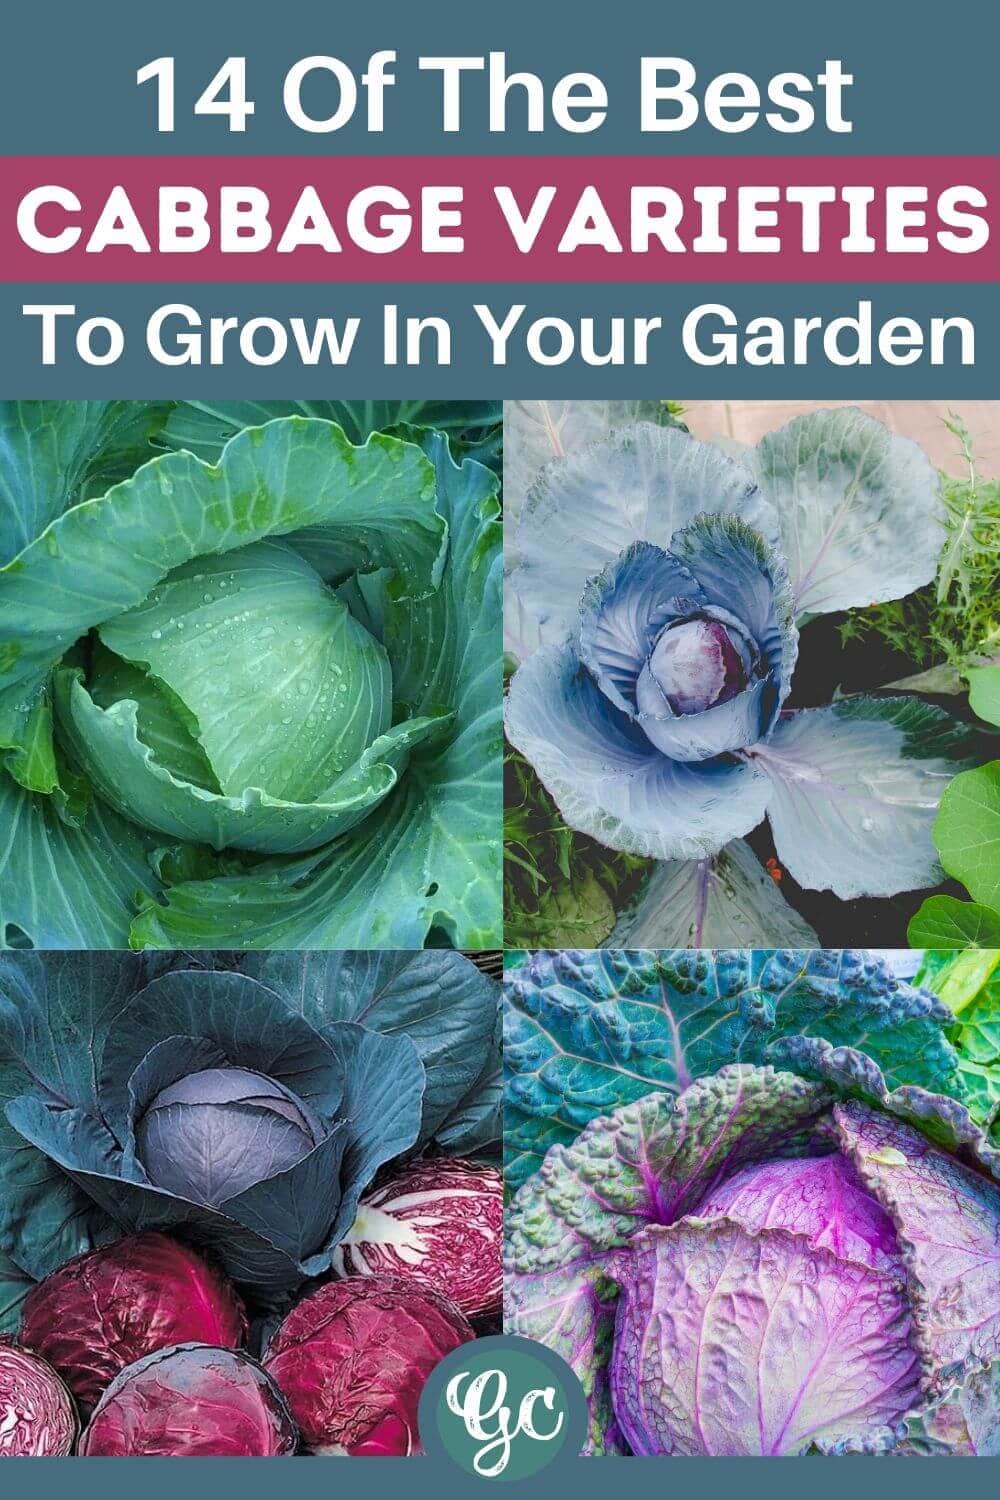  정원에서 재배할 수 있는 14가지 맛있는 양배추 품종